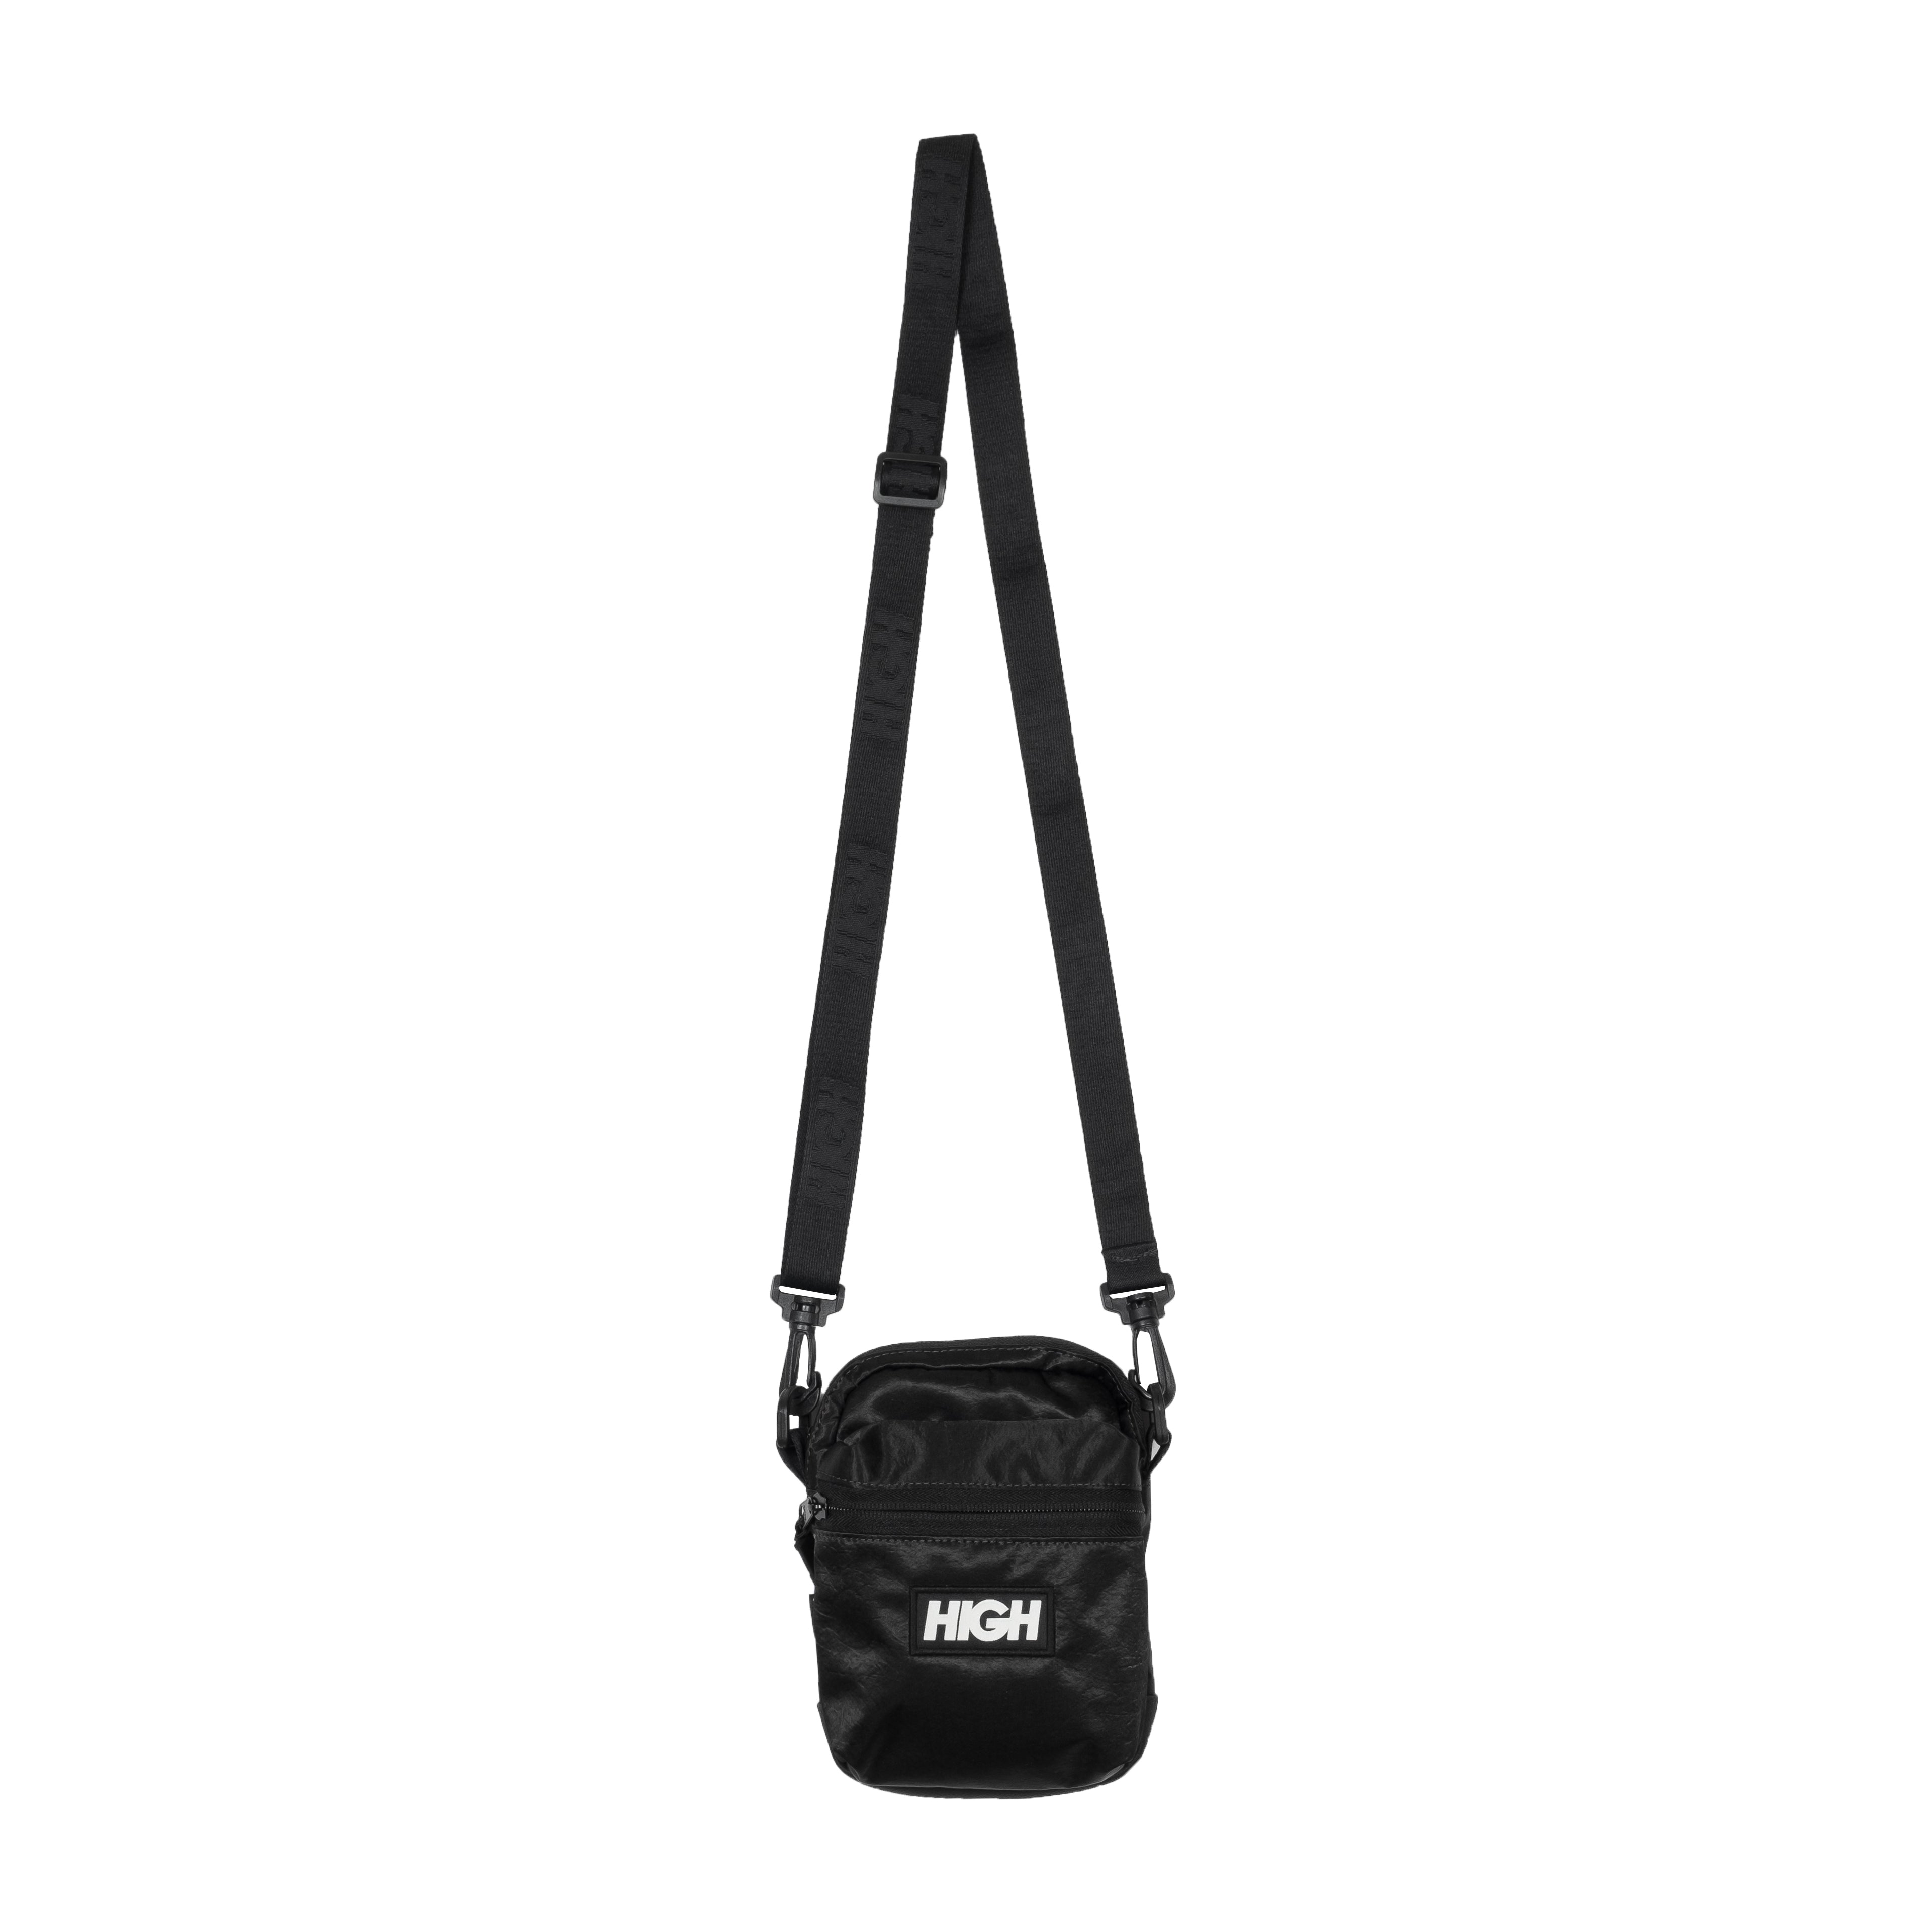 HIGH - Shoulder Bag Irisdescent Black